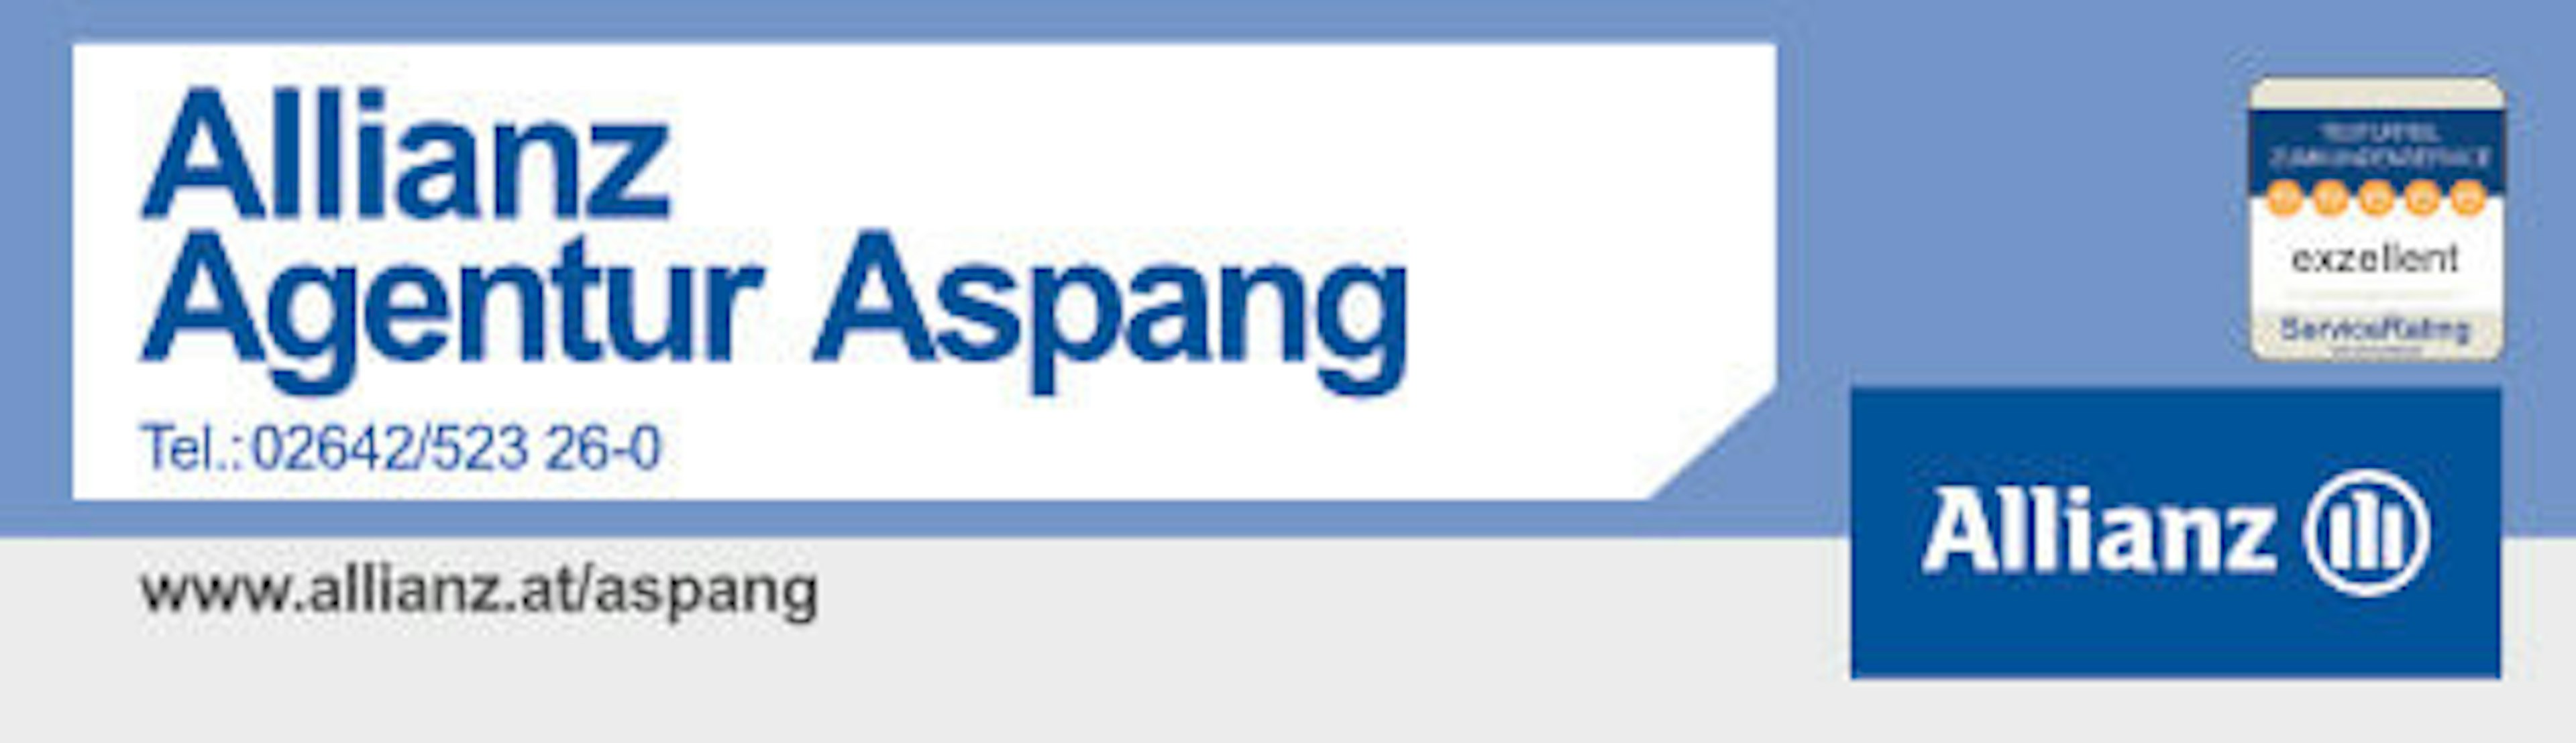 Allianz Agentur Aspang